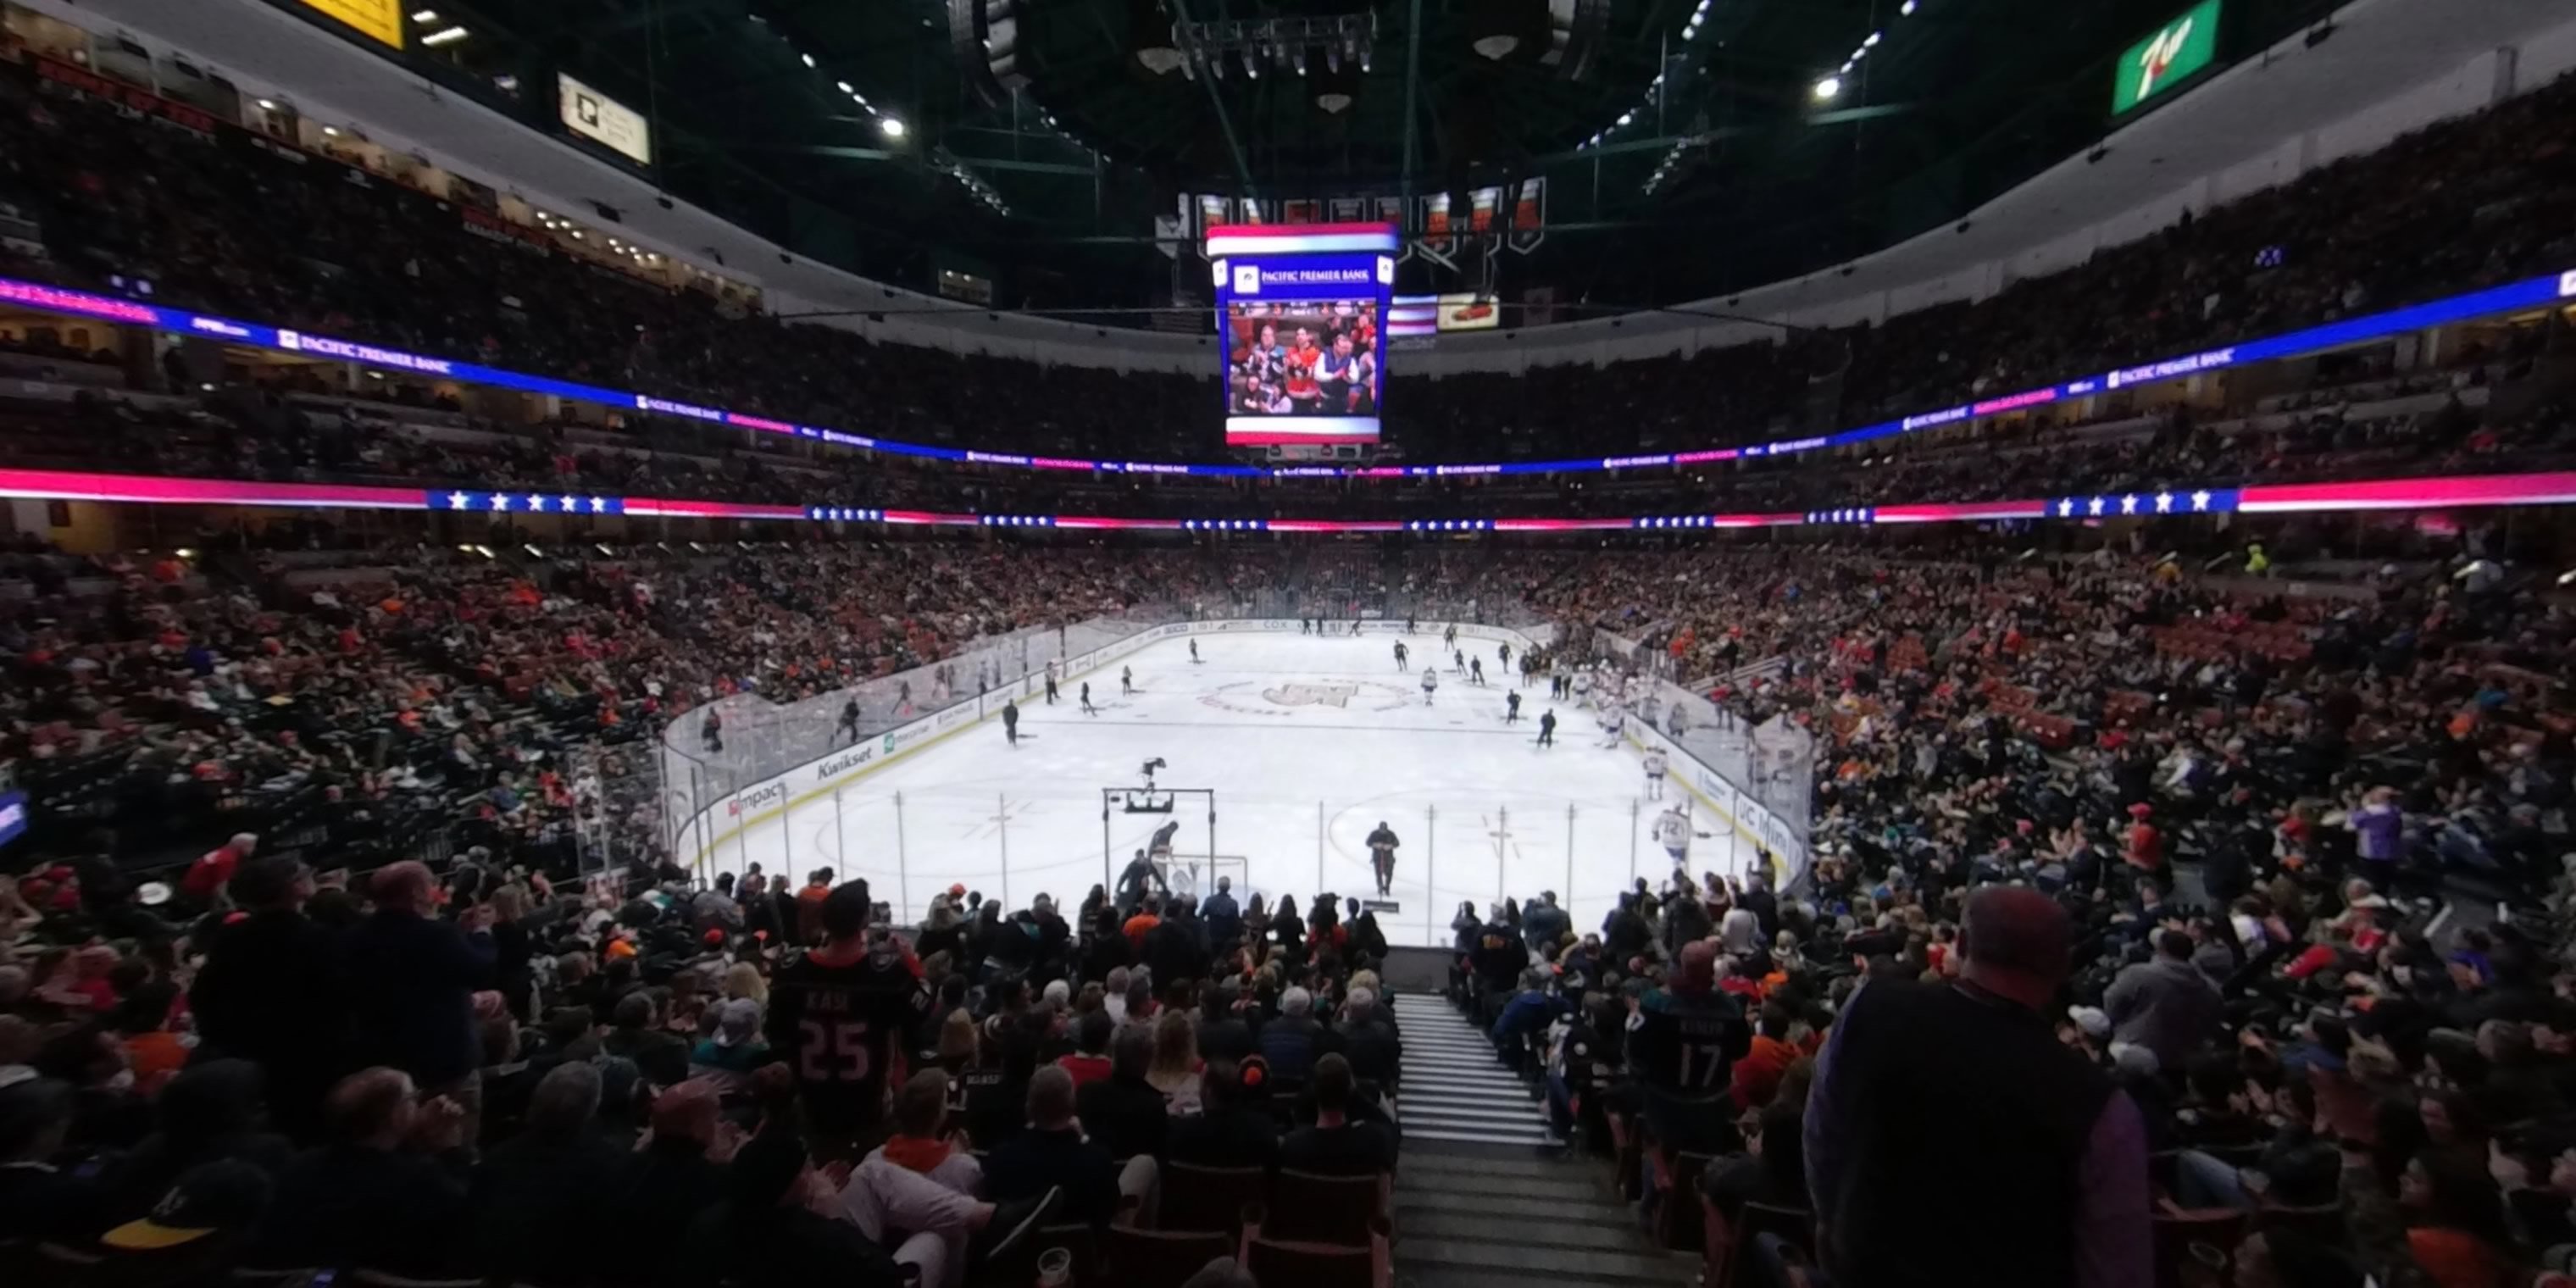 Honda Center - Hockey Stadium in Anaheim